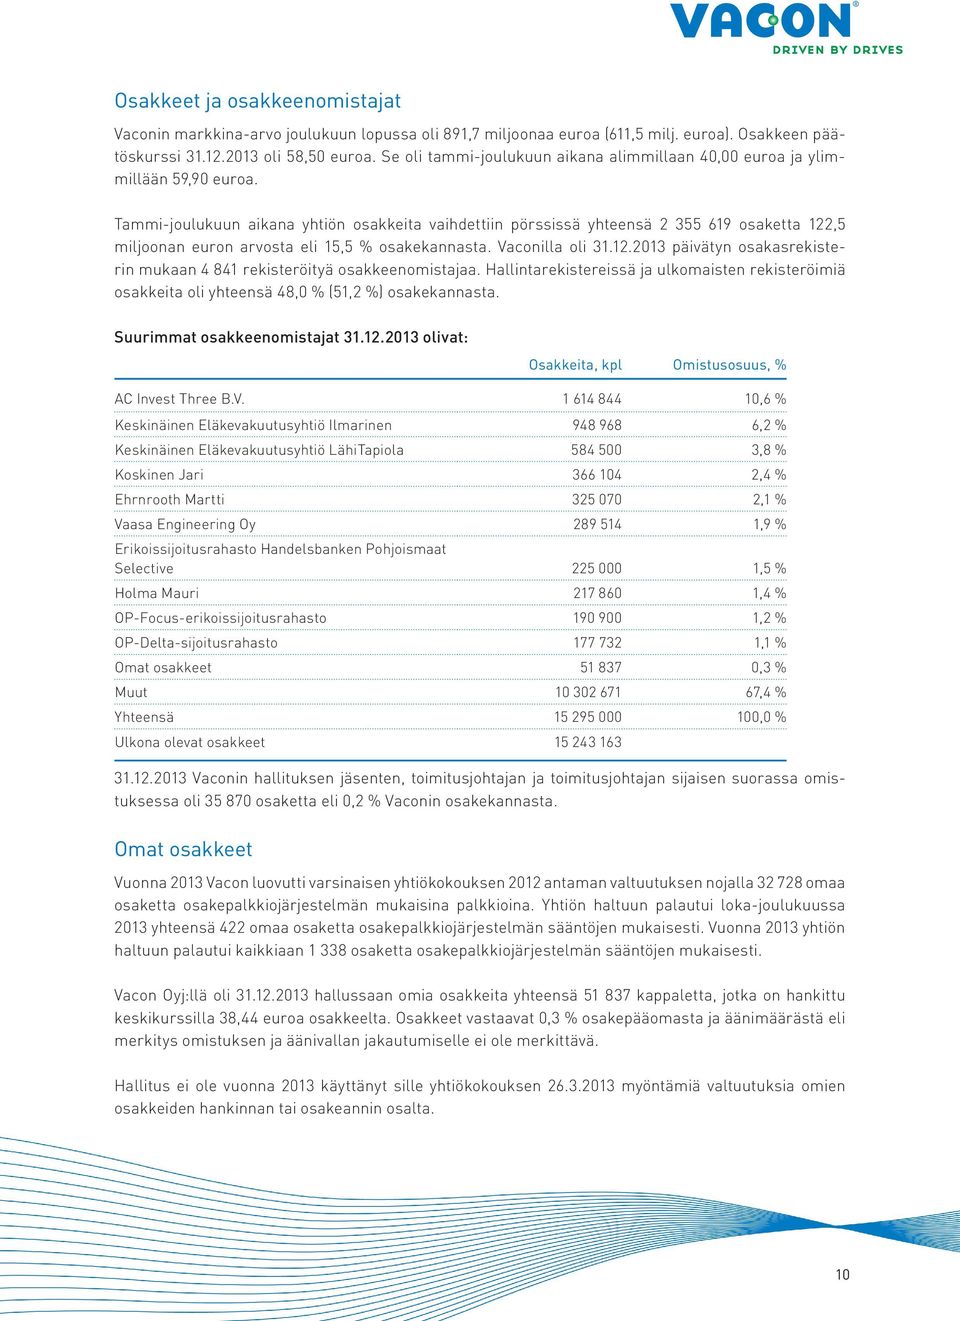 Tammi-joulukuun aikana yhtiön osakkeita vaihdettiin pörssissä yhteensä 2 355 619 osaketta 122,5 miljoonan euron arvosta eli 15,5 % osakekannasta. Vaconilla oli 31.12.2013 päivätyn osakasrekisterin mukaan 4 841 rekisteröityä osakkeenomistajaa.